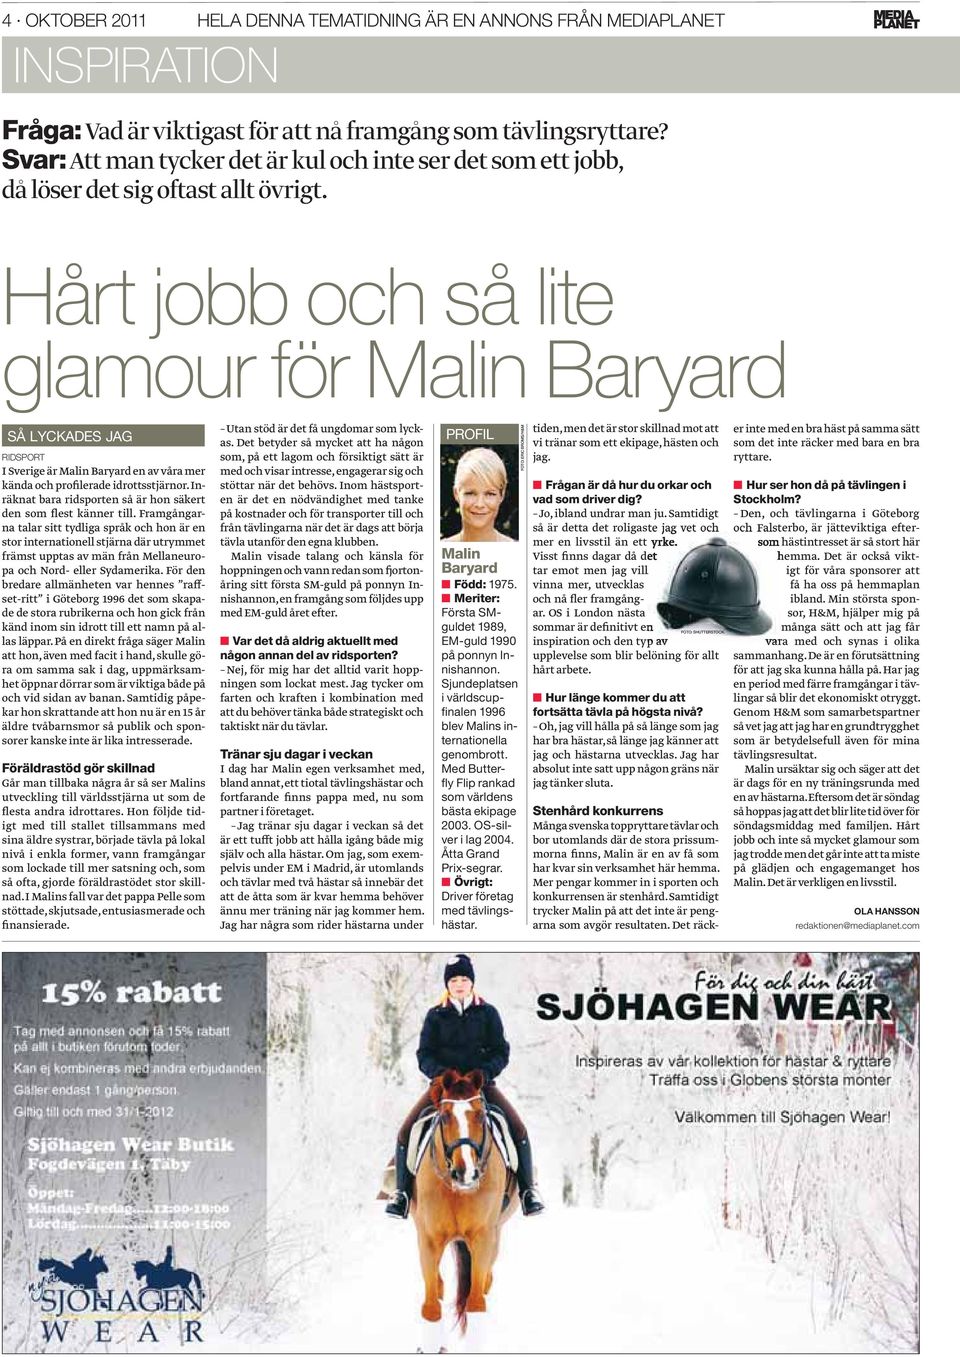 Hårt jobb och så lite glamour för Malin Baryard SÅ LYCKADES JAG RIDSPORT I Sverige är Malin Baryard en av våra mer kända och profilerade idrottsstjärnor.